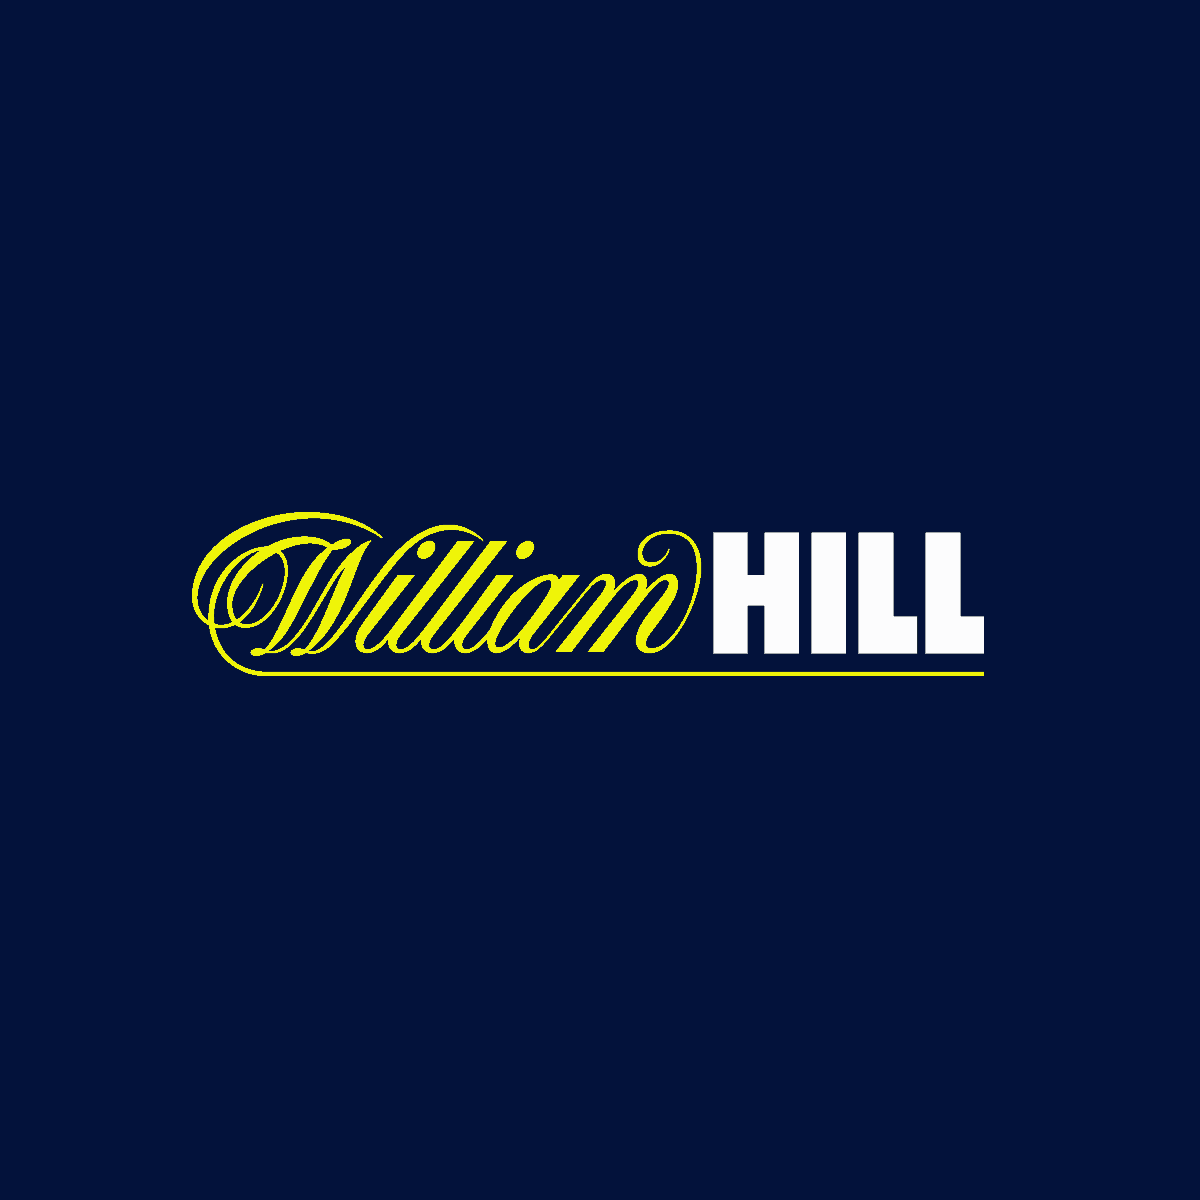 7. William Hill